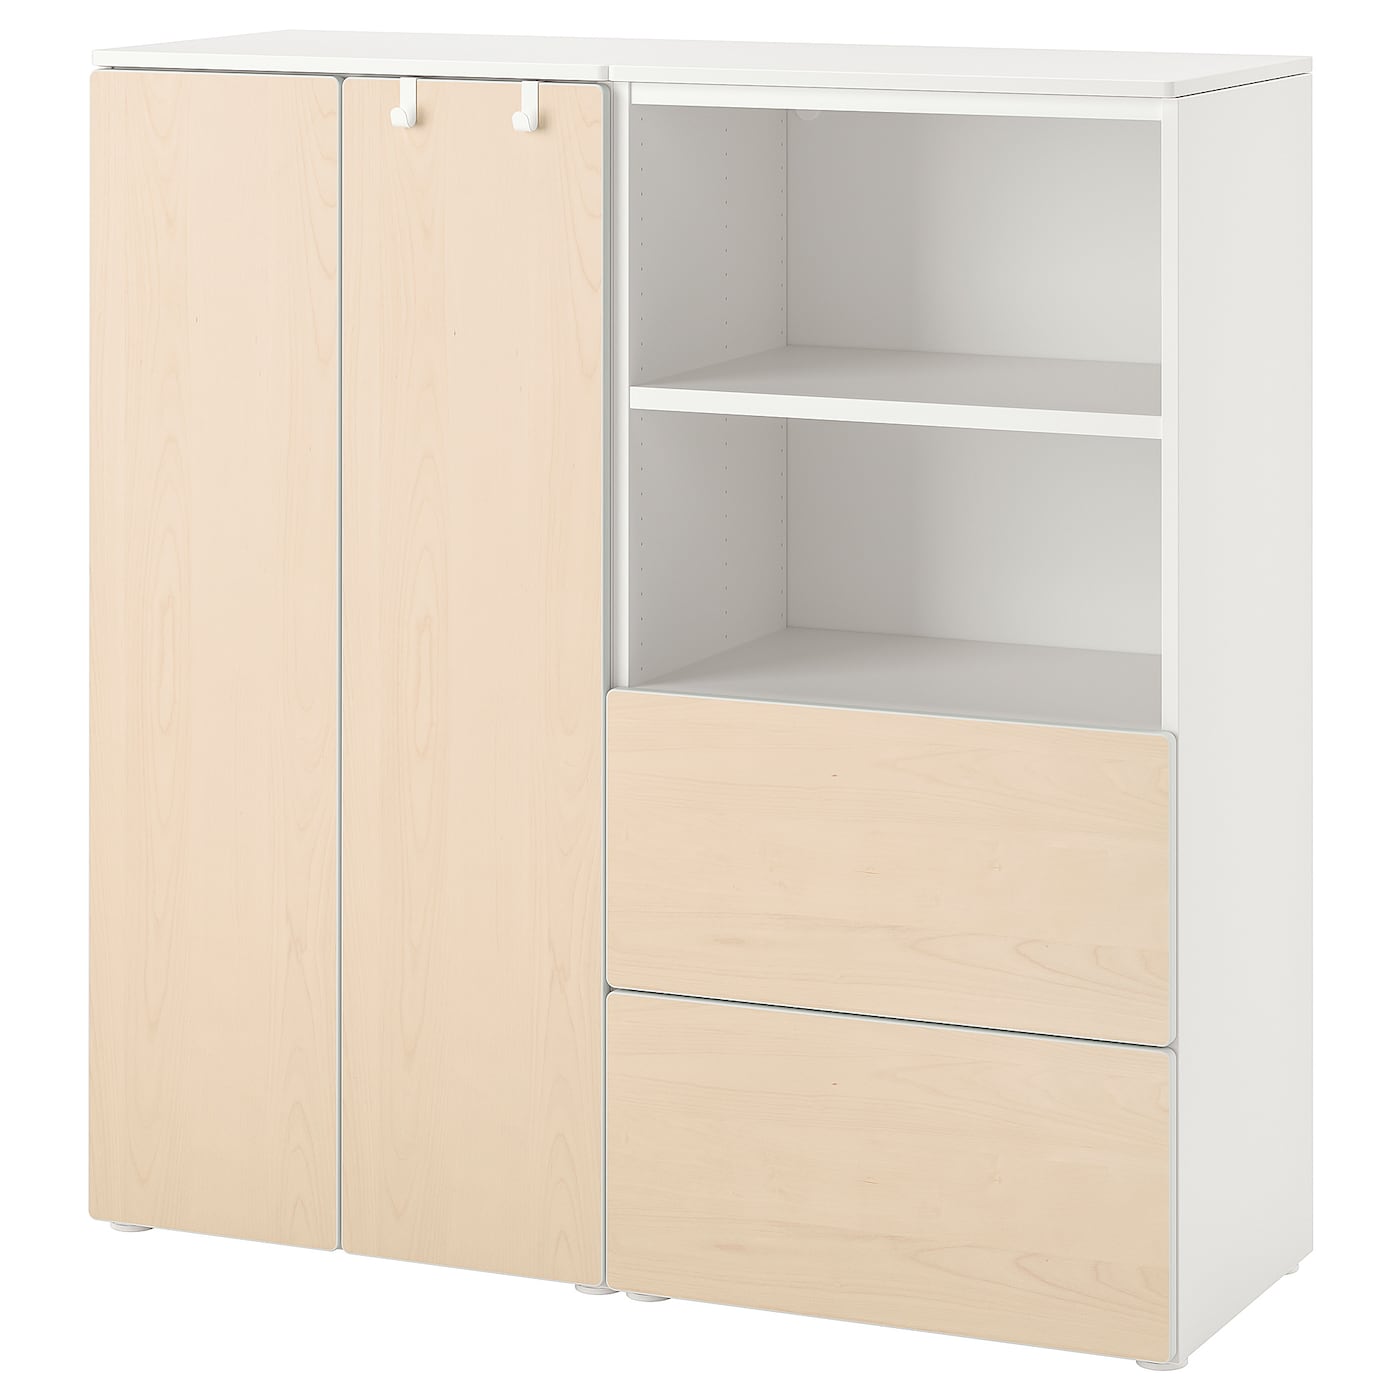 Книжный шкаф - SMÅSTAD / PLATSA /SMАSTAD /  СМОСТАД/ ПЛАТСА  ИКЕА,  123х120 см, белый/под беленый дуб